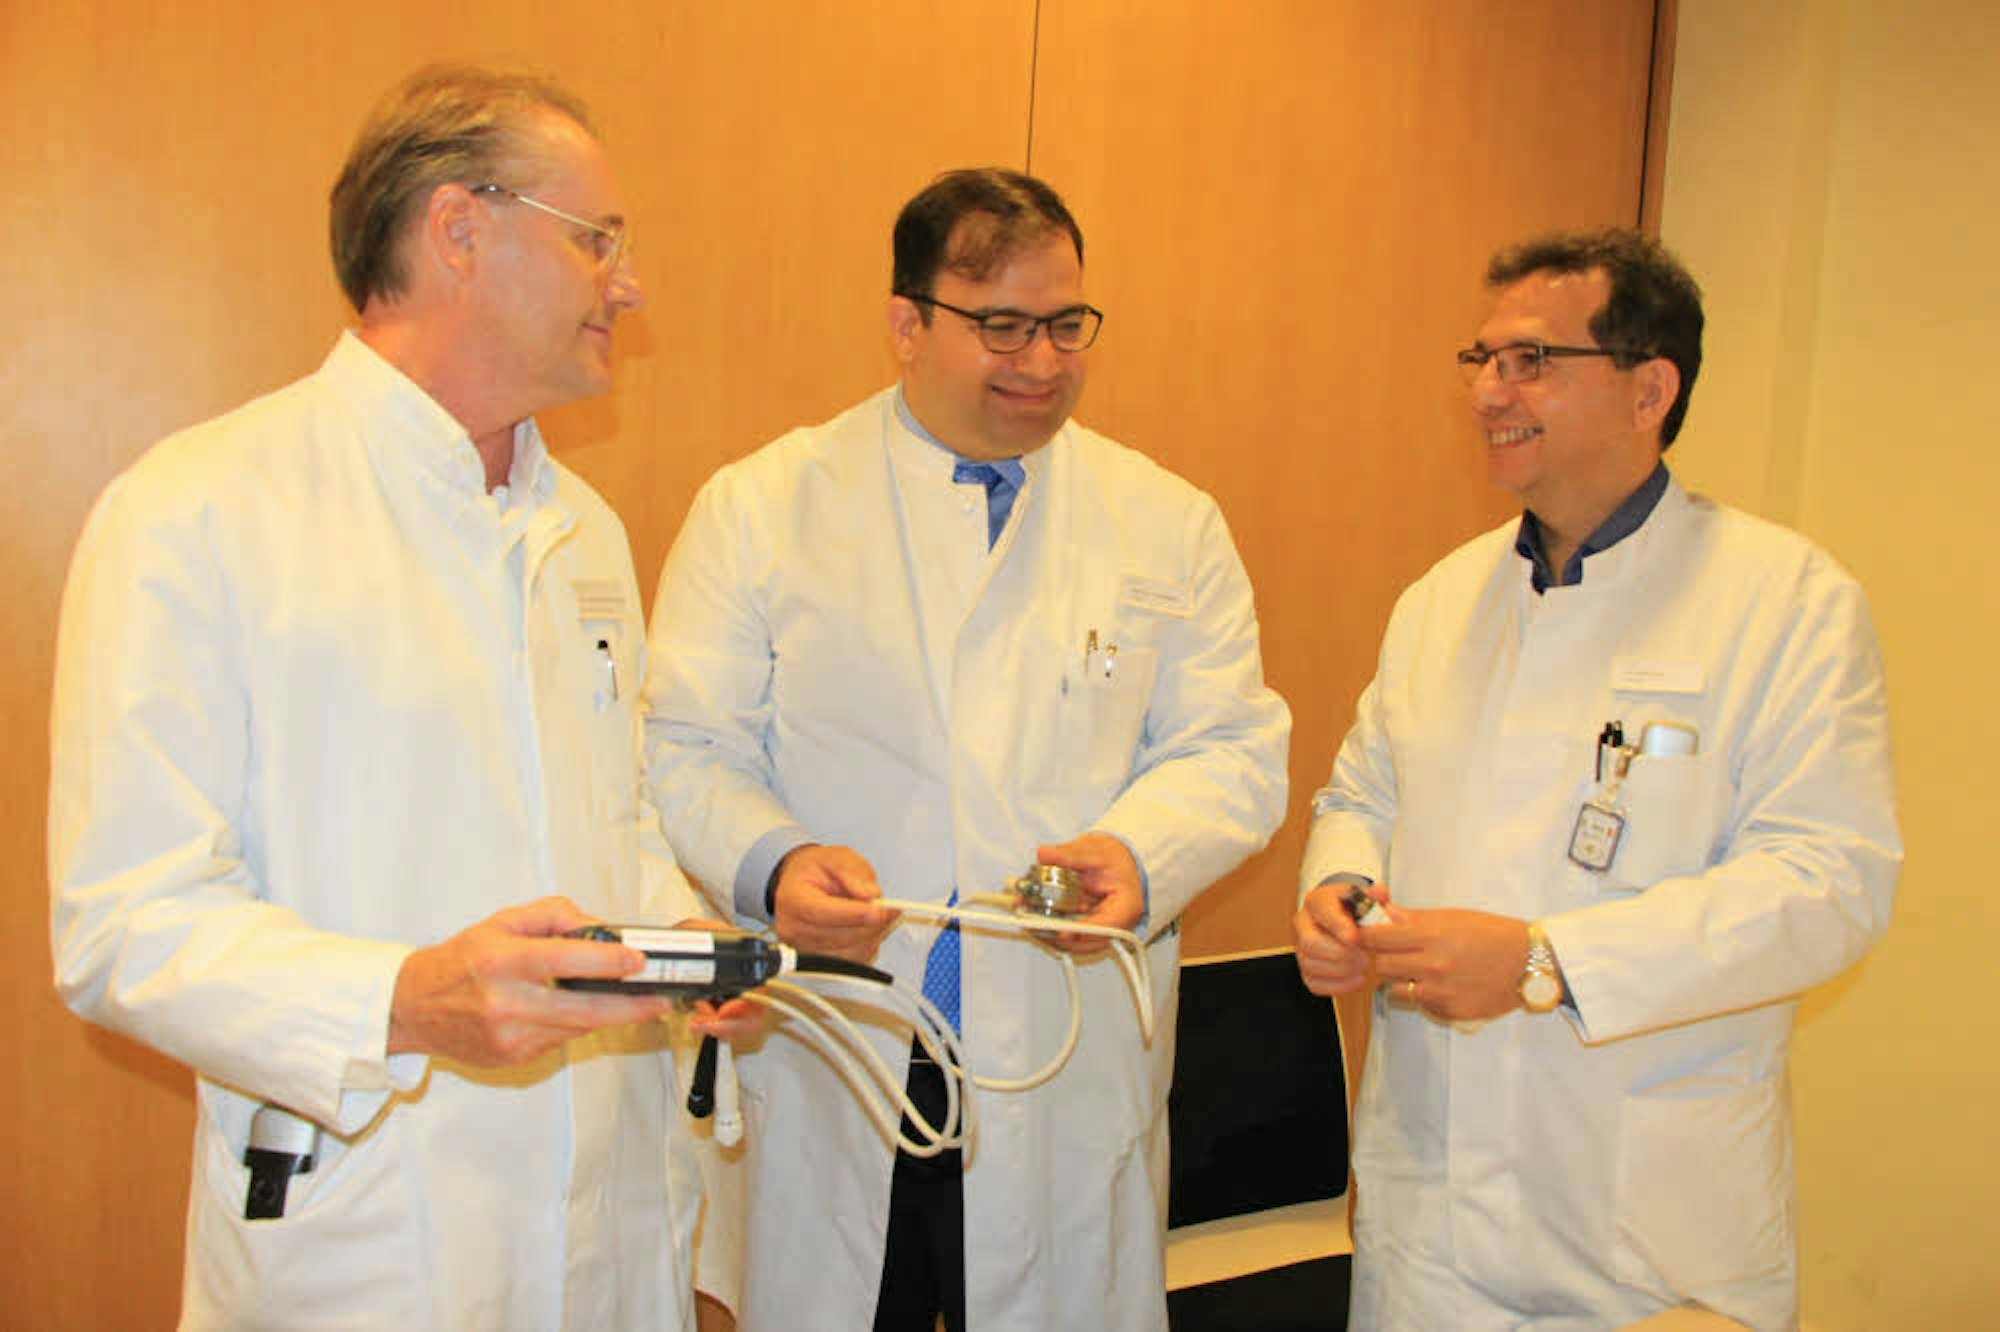 Die Funktion des künstlichen Herzens erklären Professor Farhard Bakhtiary (Mitte), Dr. Peter Noetges (links) und Dr. Sami Sirat.